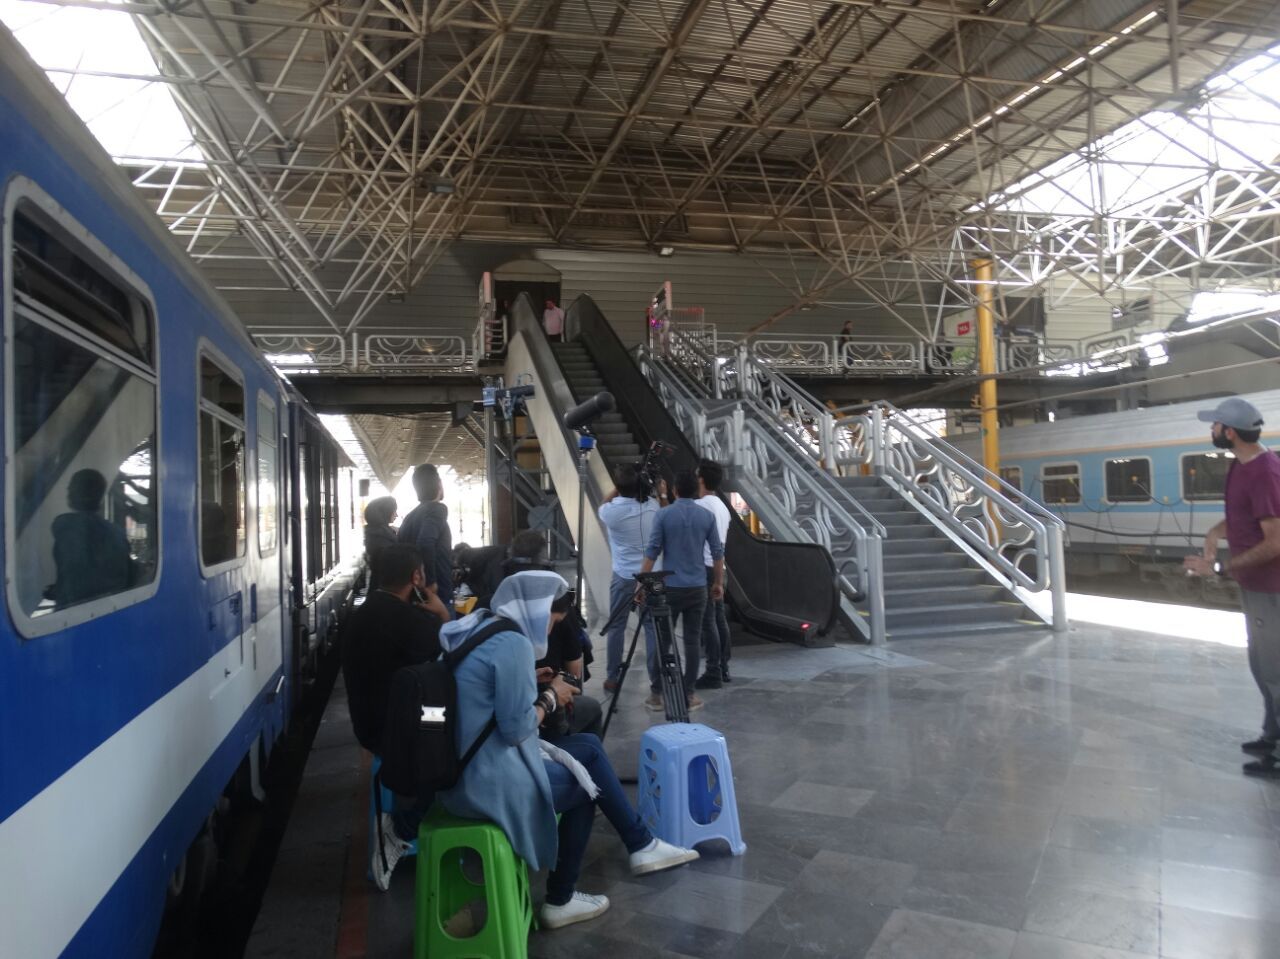 فیلم سینمایی «آخرین ایستگاه» در مراحل فیلمبرداری در ایستگاه راه آهن تهران 